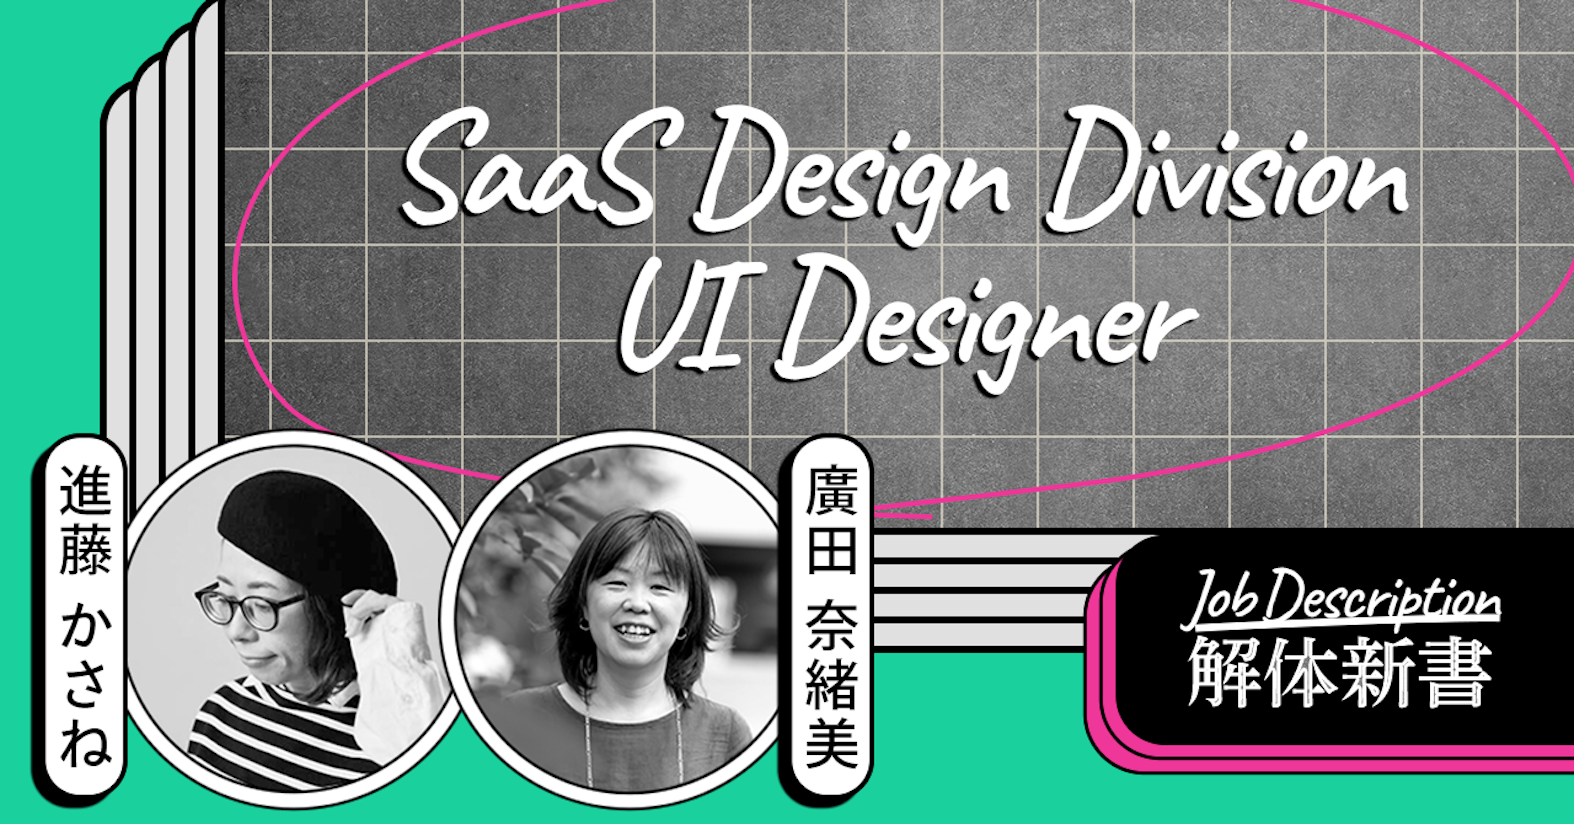 活躍できる場は自分のWill次第。プロダクトに深く入り込んでユーザー体験を考え抜く──SaaS Design Division UIデザイナー